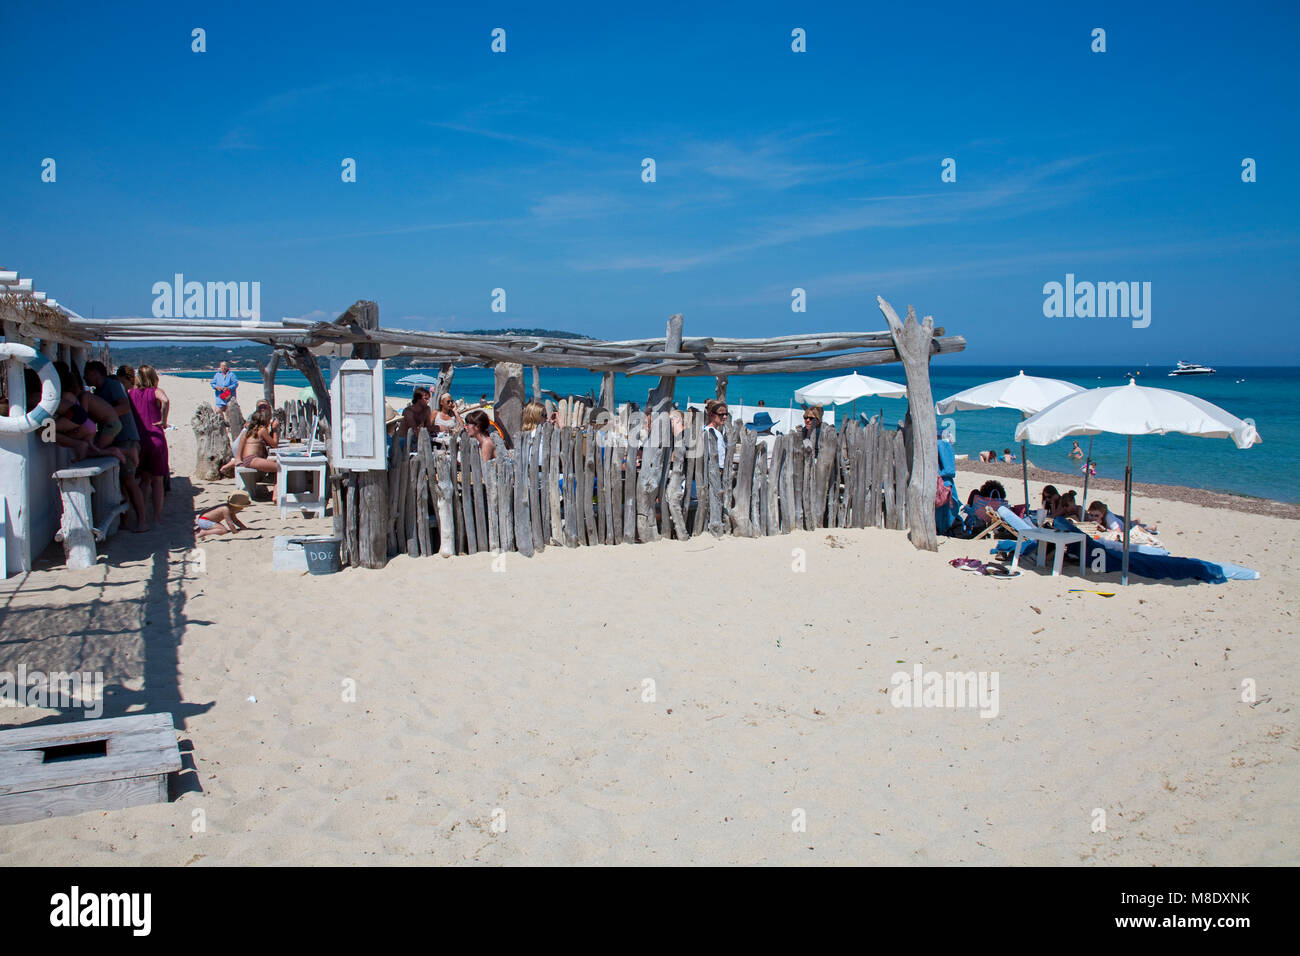 Idyllischen Strand Bar am Strand von Pampelonne, beliebten Strand von Saint Tropez, Côte d'Azur, Südfrankreich, Cote d'Azur, Frankreich, Europa Stockfoto